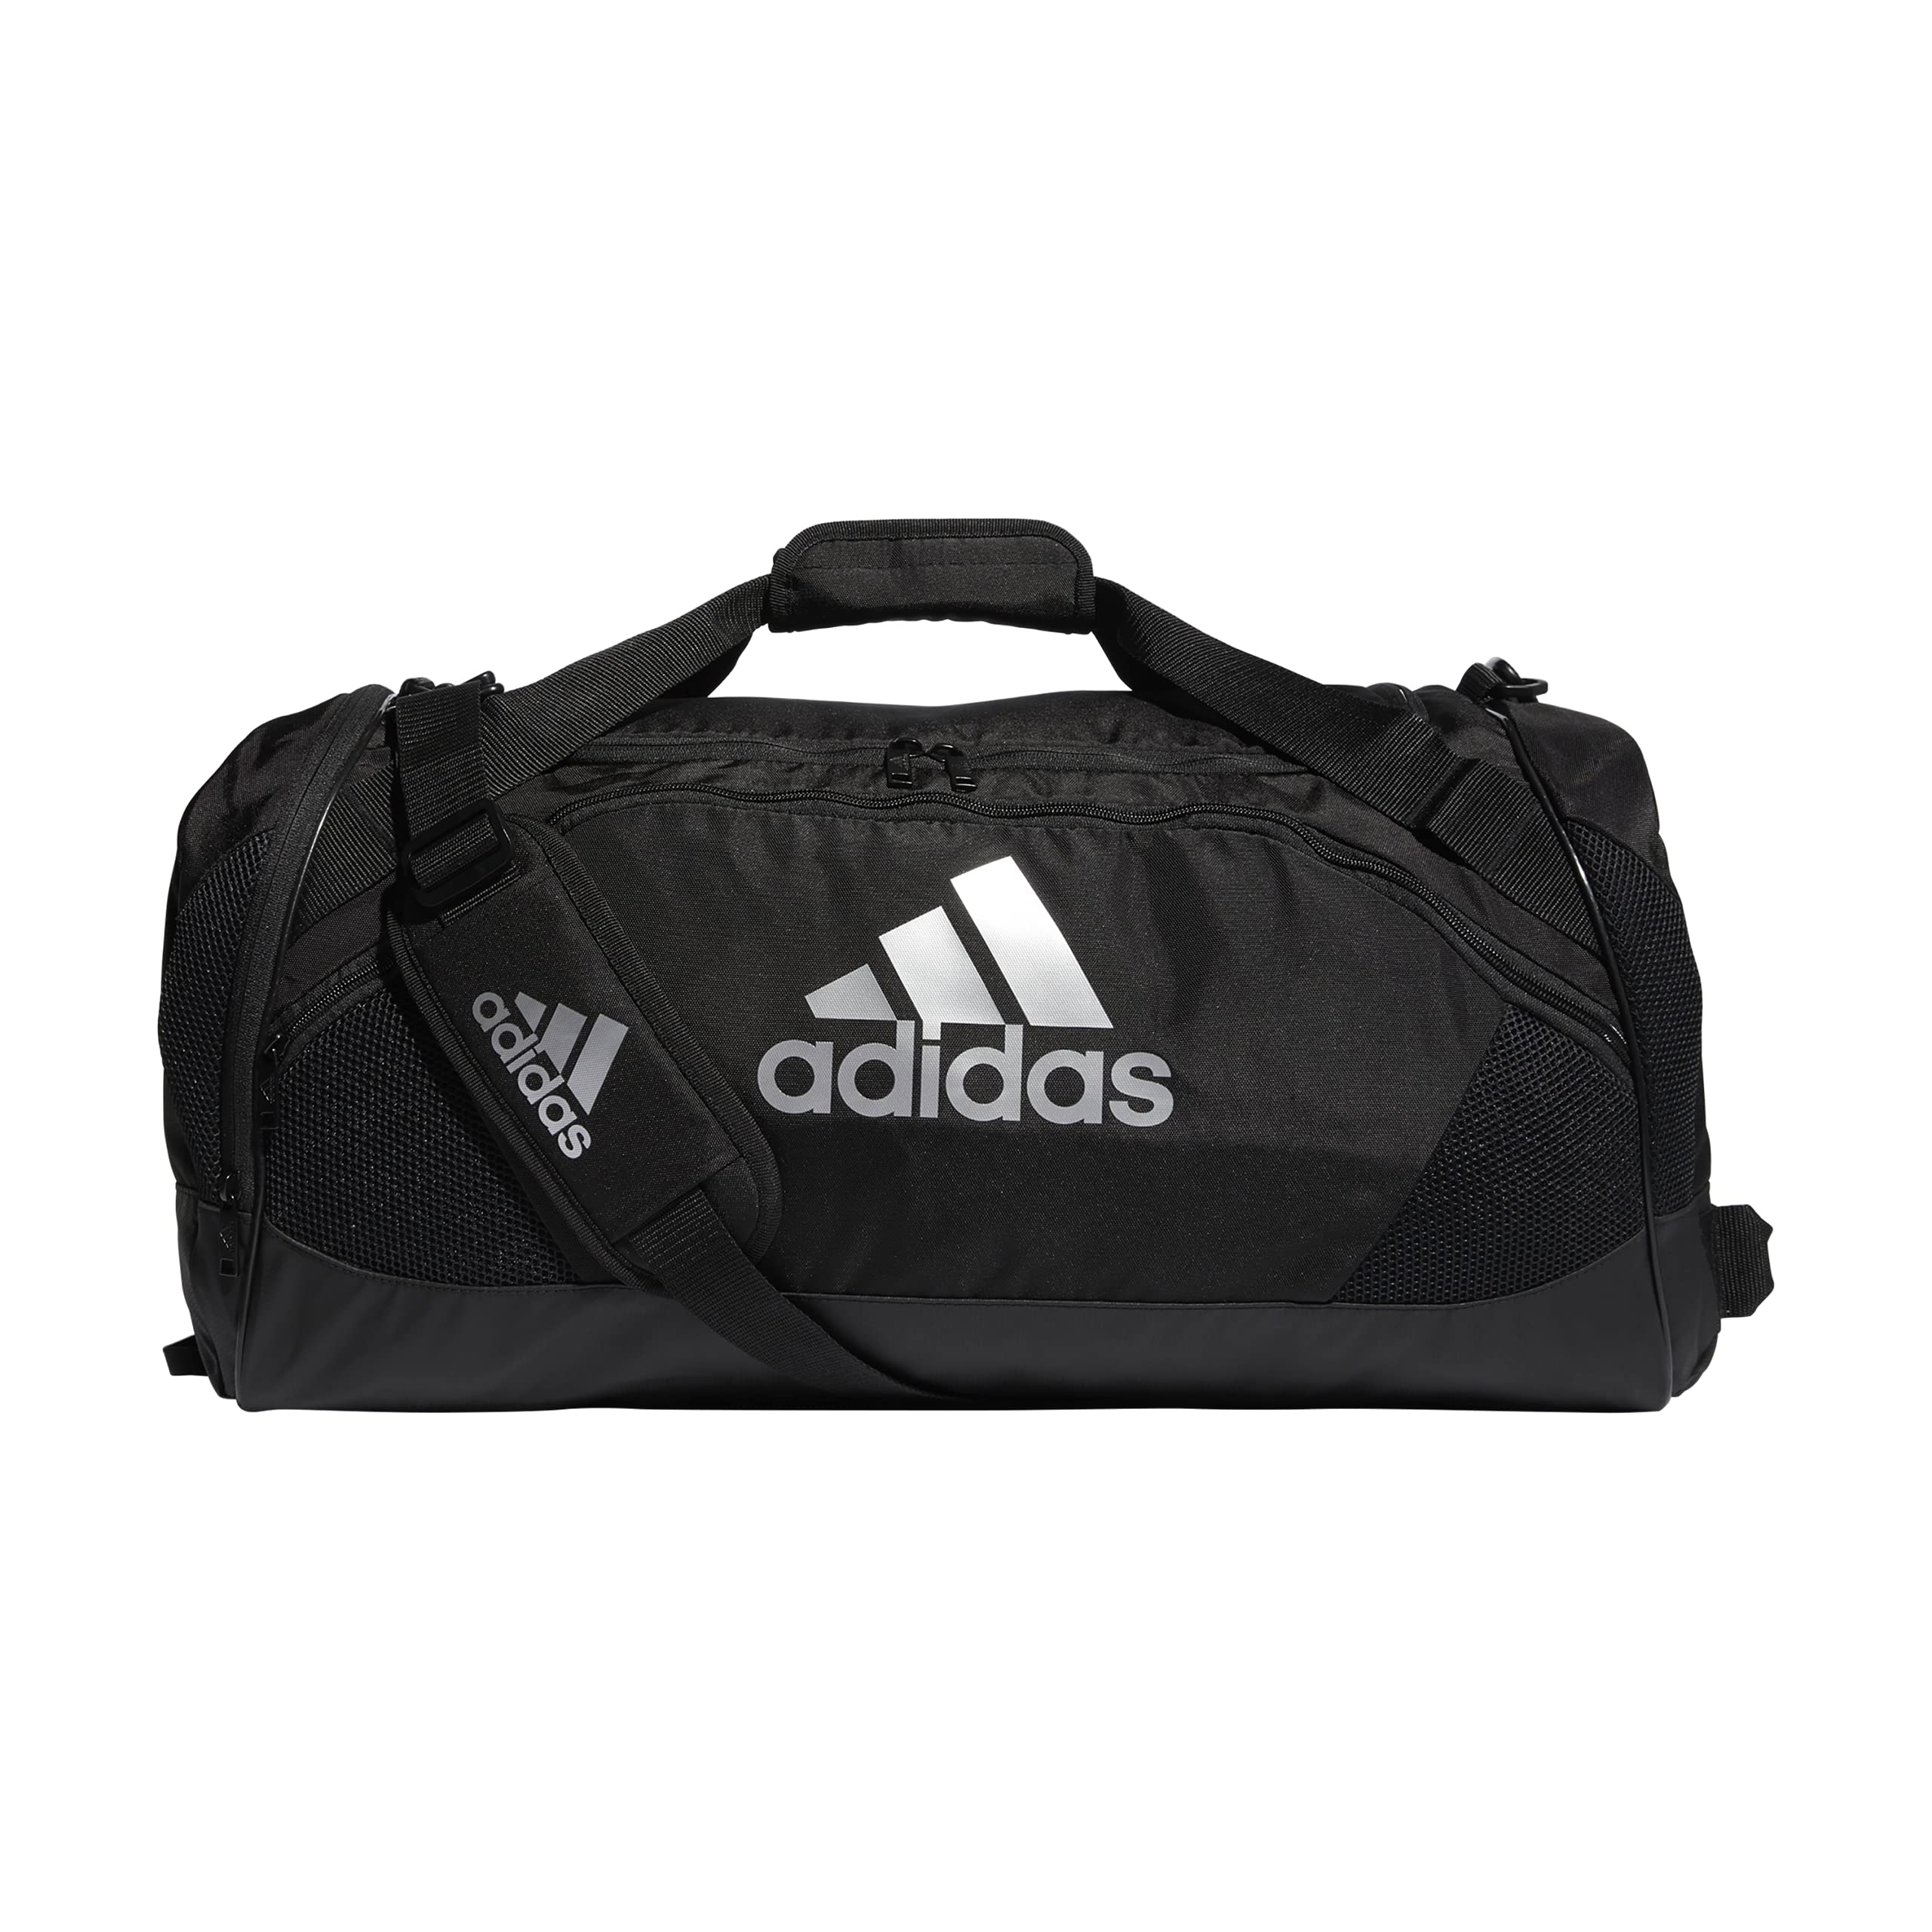 Túi Adidas ClimaCool Team Bag Black Mẫu 2018 Mã TA112 - Balo du lịch